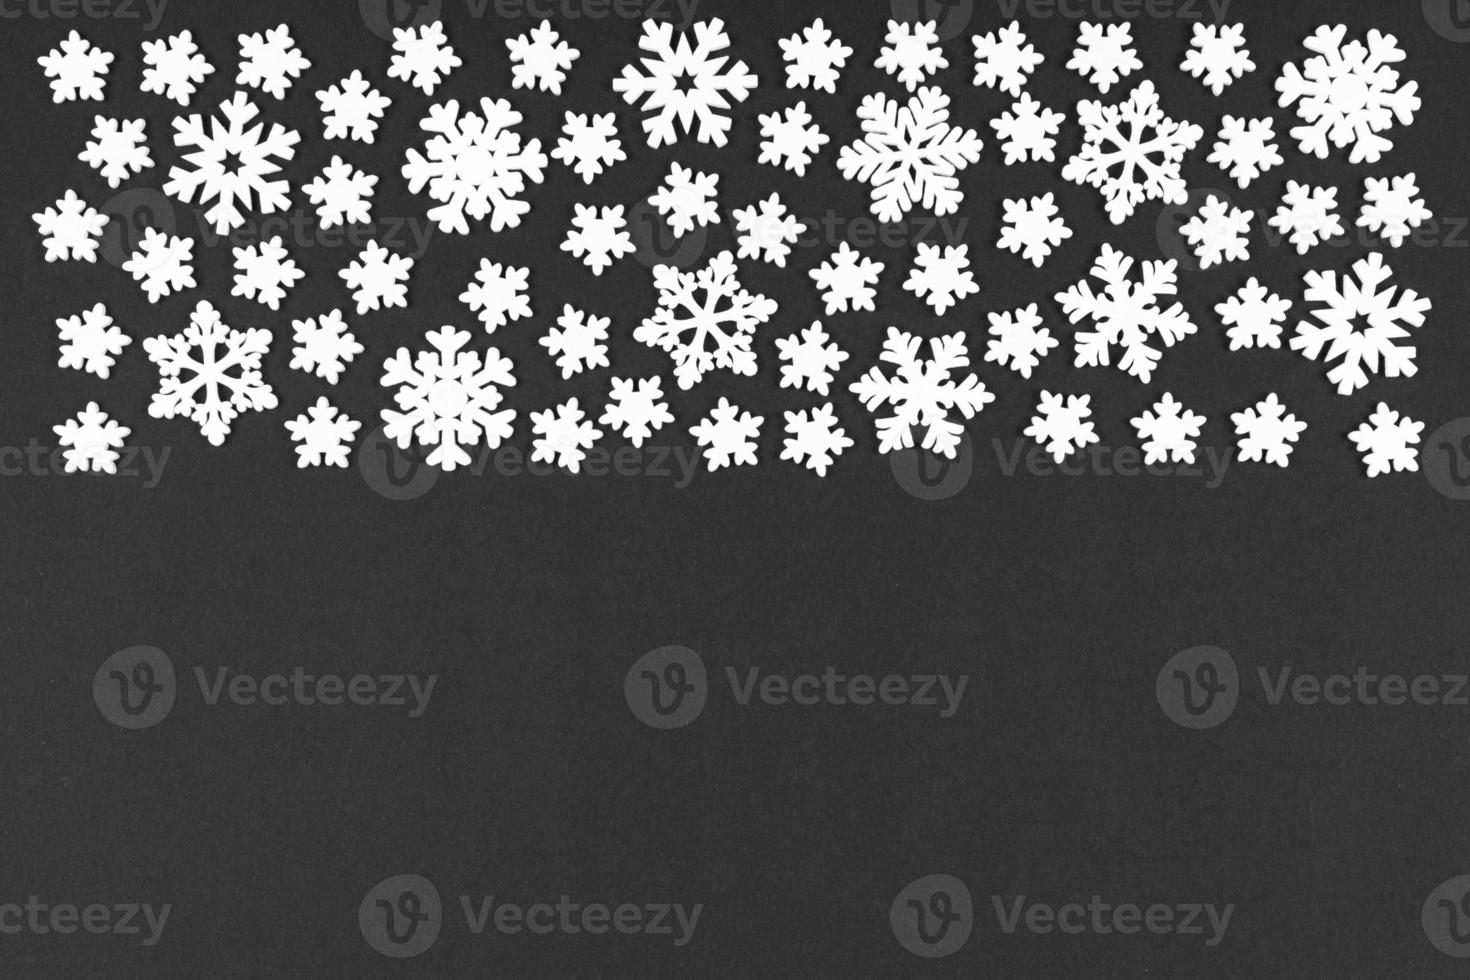 vista superior do ornamento de inverno feito de flocos de neve brancos sobre fundo colorido. feliz ano novo conceito com espaço de cópia foto